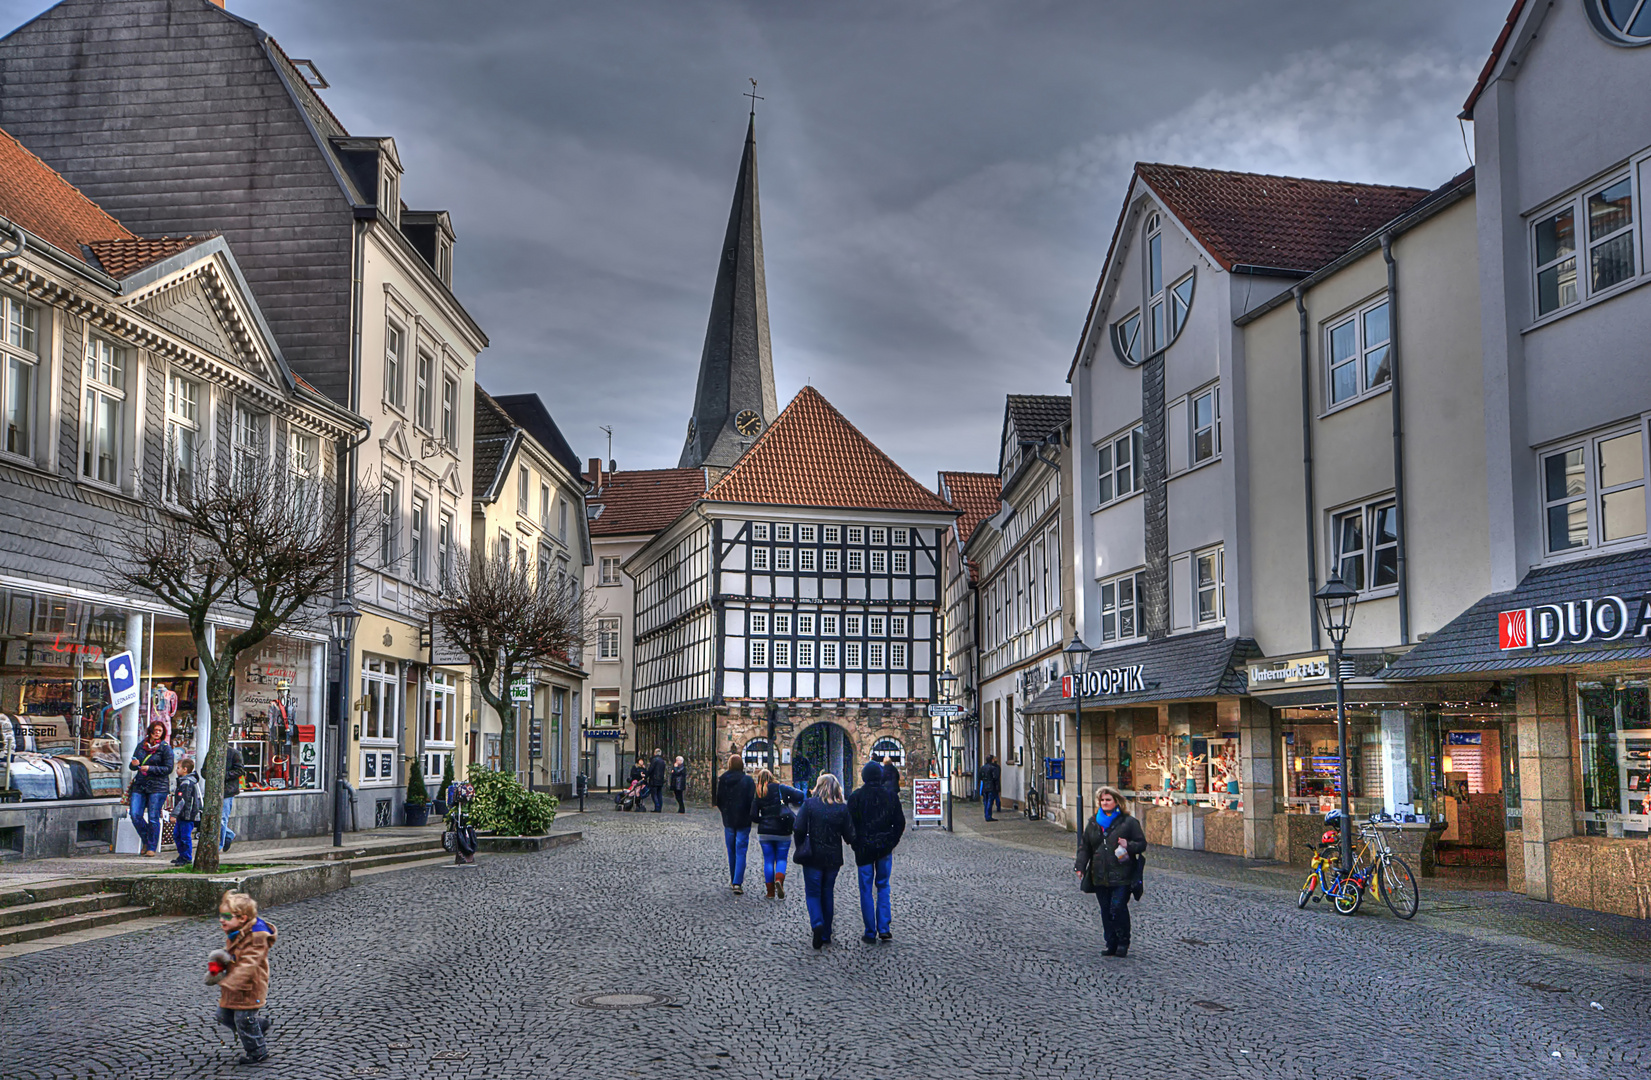 Hattingen Altstadt